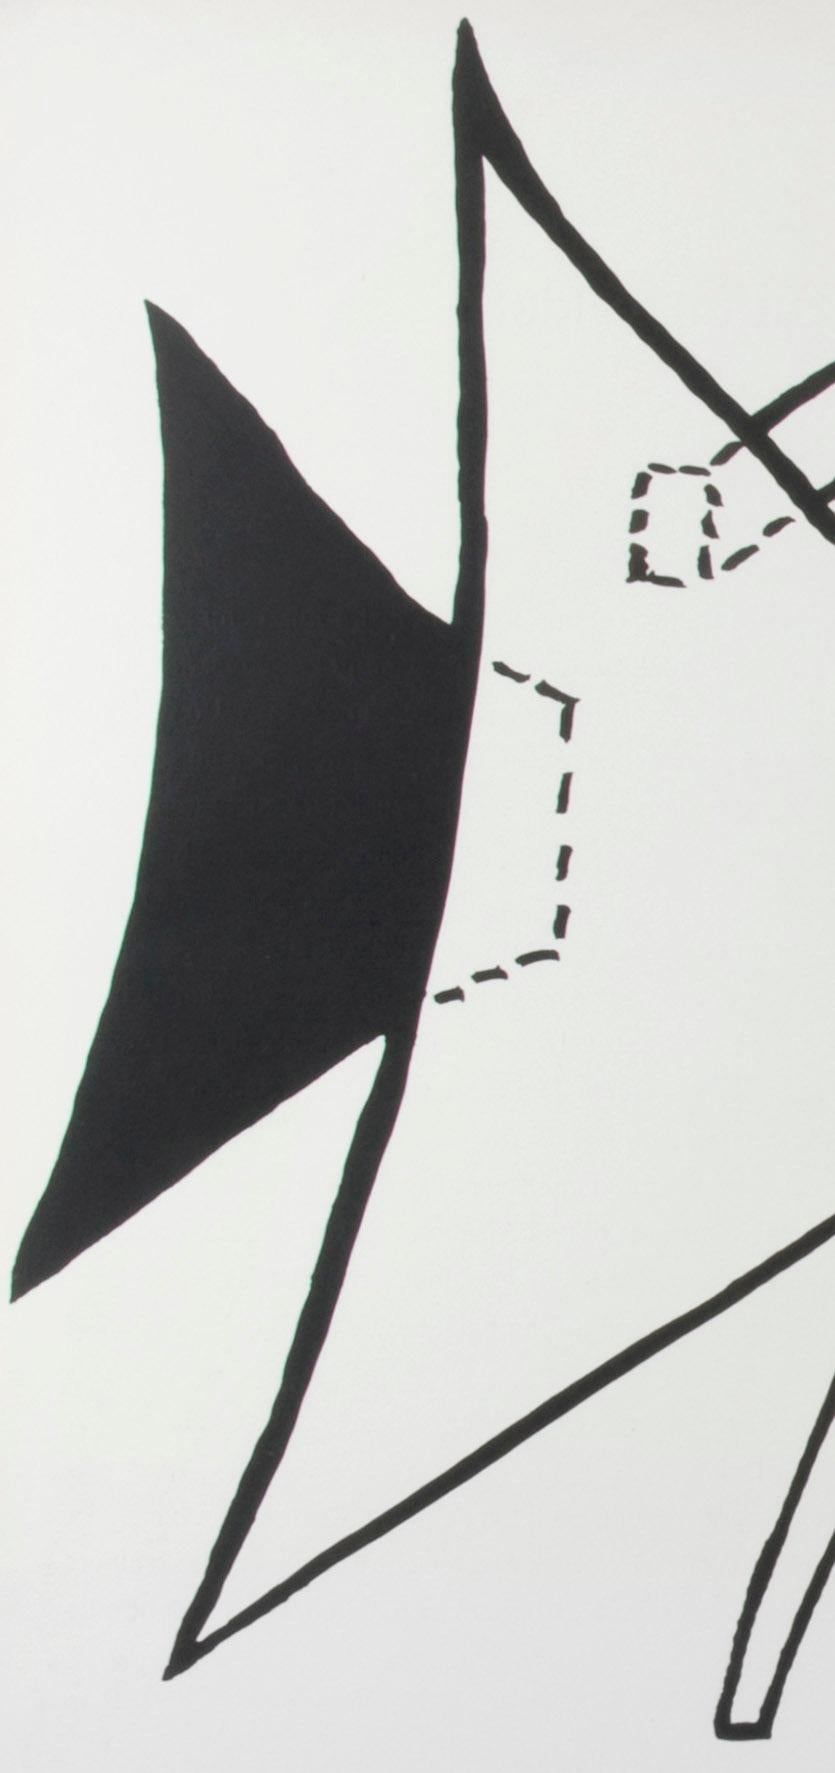 Untitled (Plate 2) DLM - Print by Alexander Calder